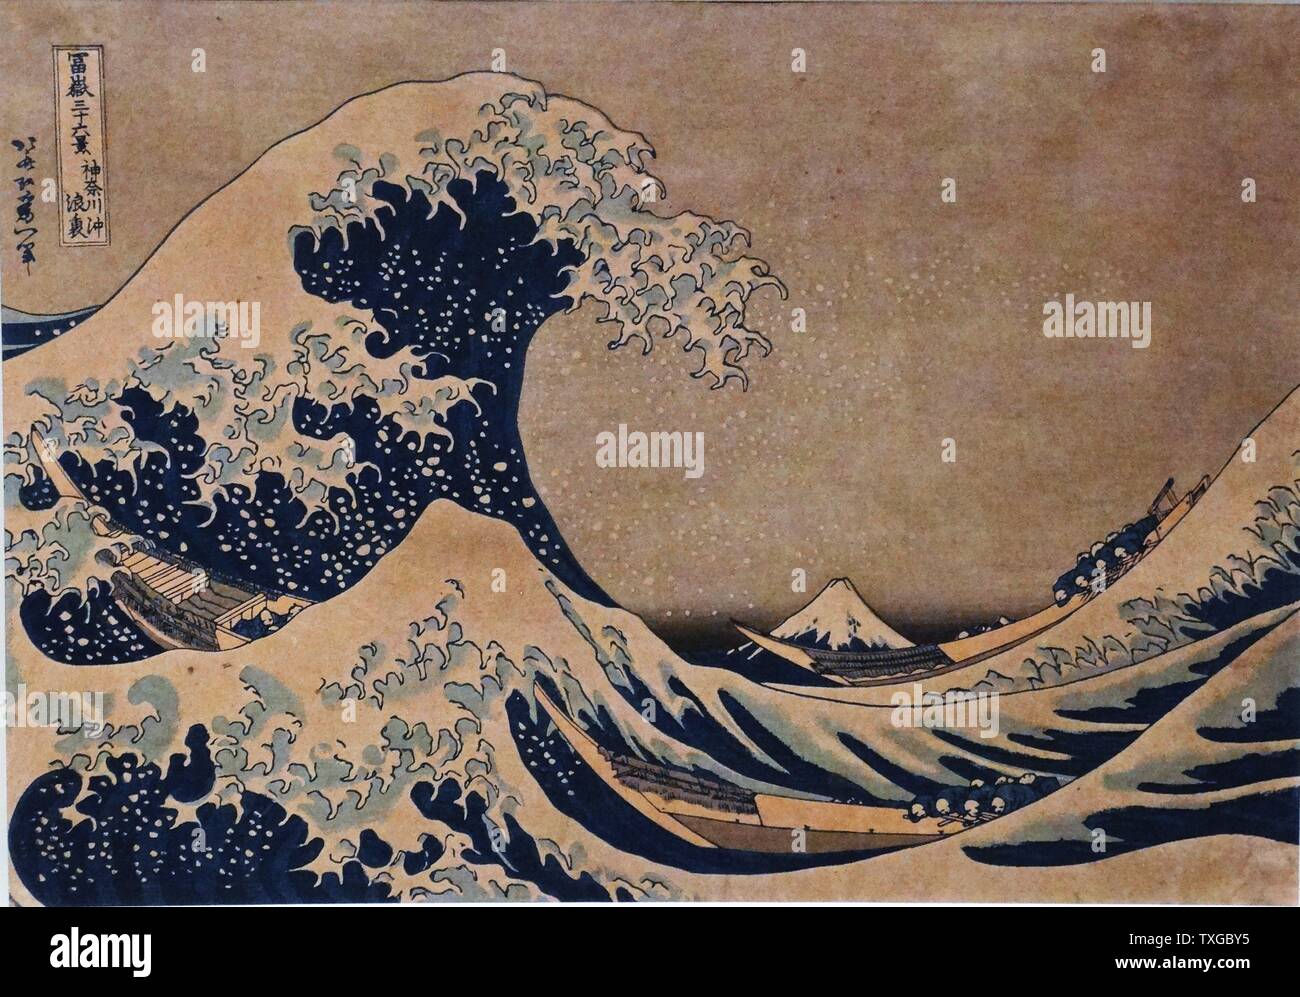 La grande vague de Kanagawa par Katsushika Hokusai (1760-1849), artiste japonais ukiyo-e peintre et graveur de la période Edo. Datée 1832 Banque D'Images